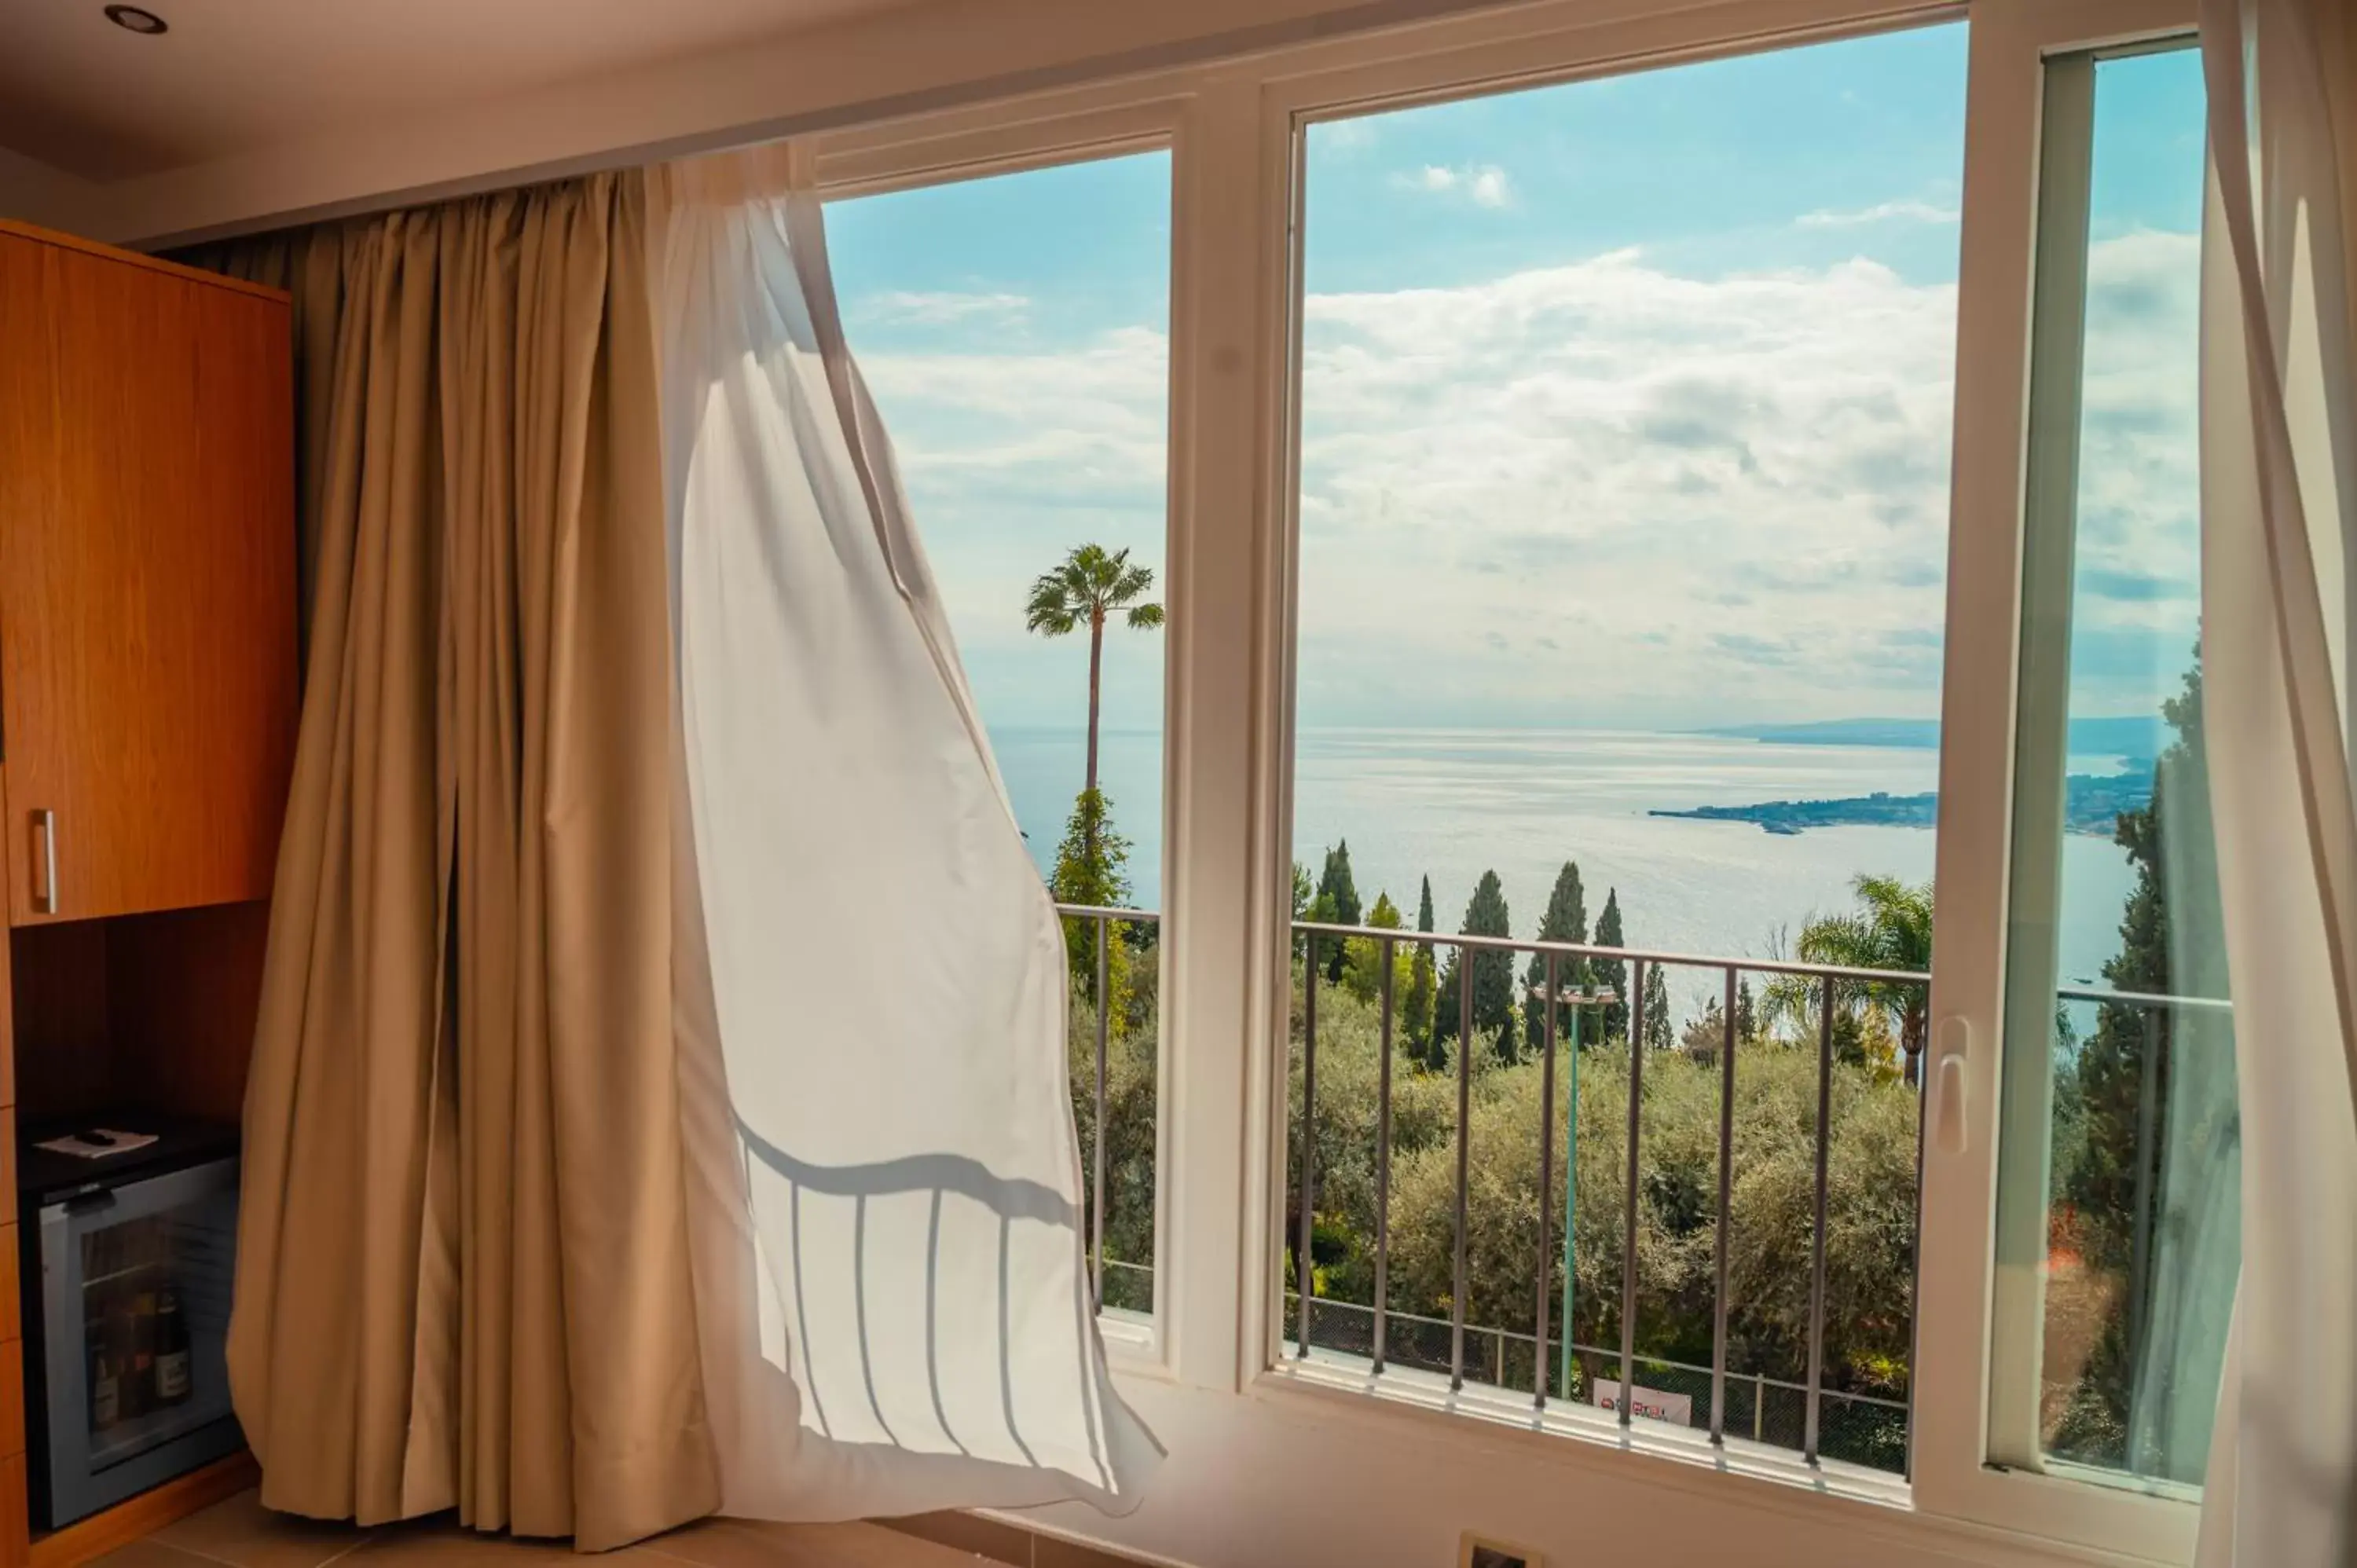 Sea view in Hotel Villa Paradiso